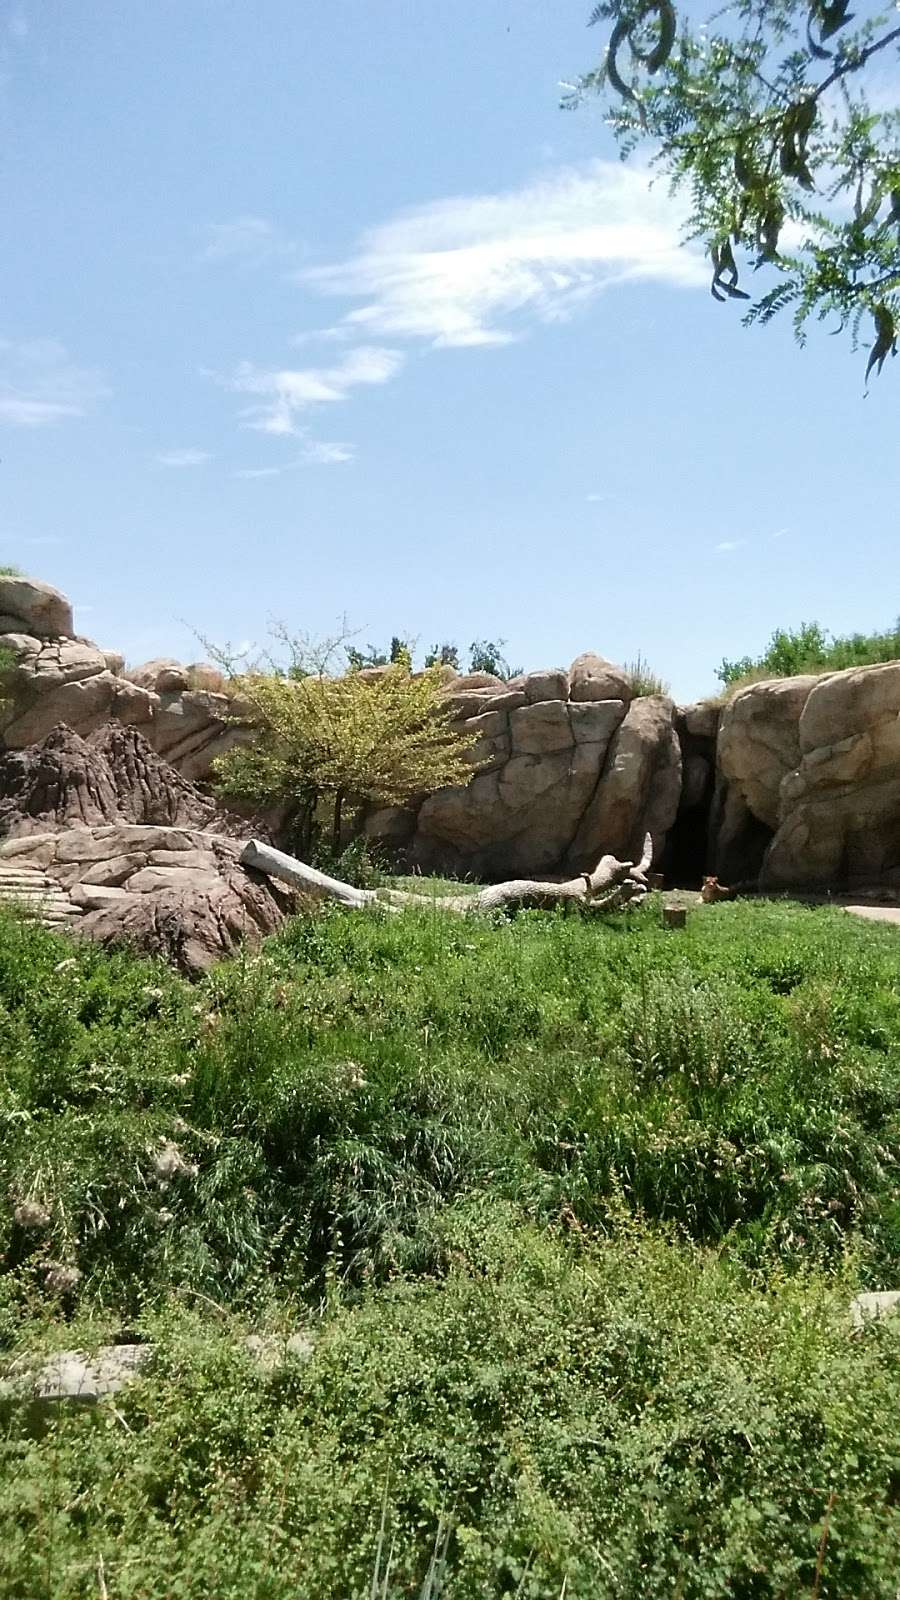 Zoo Entrance | Denver, CO 80205, USA